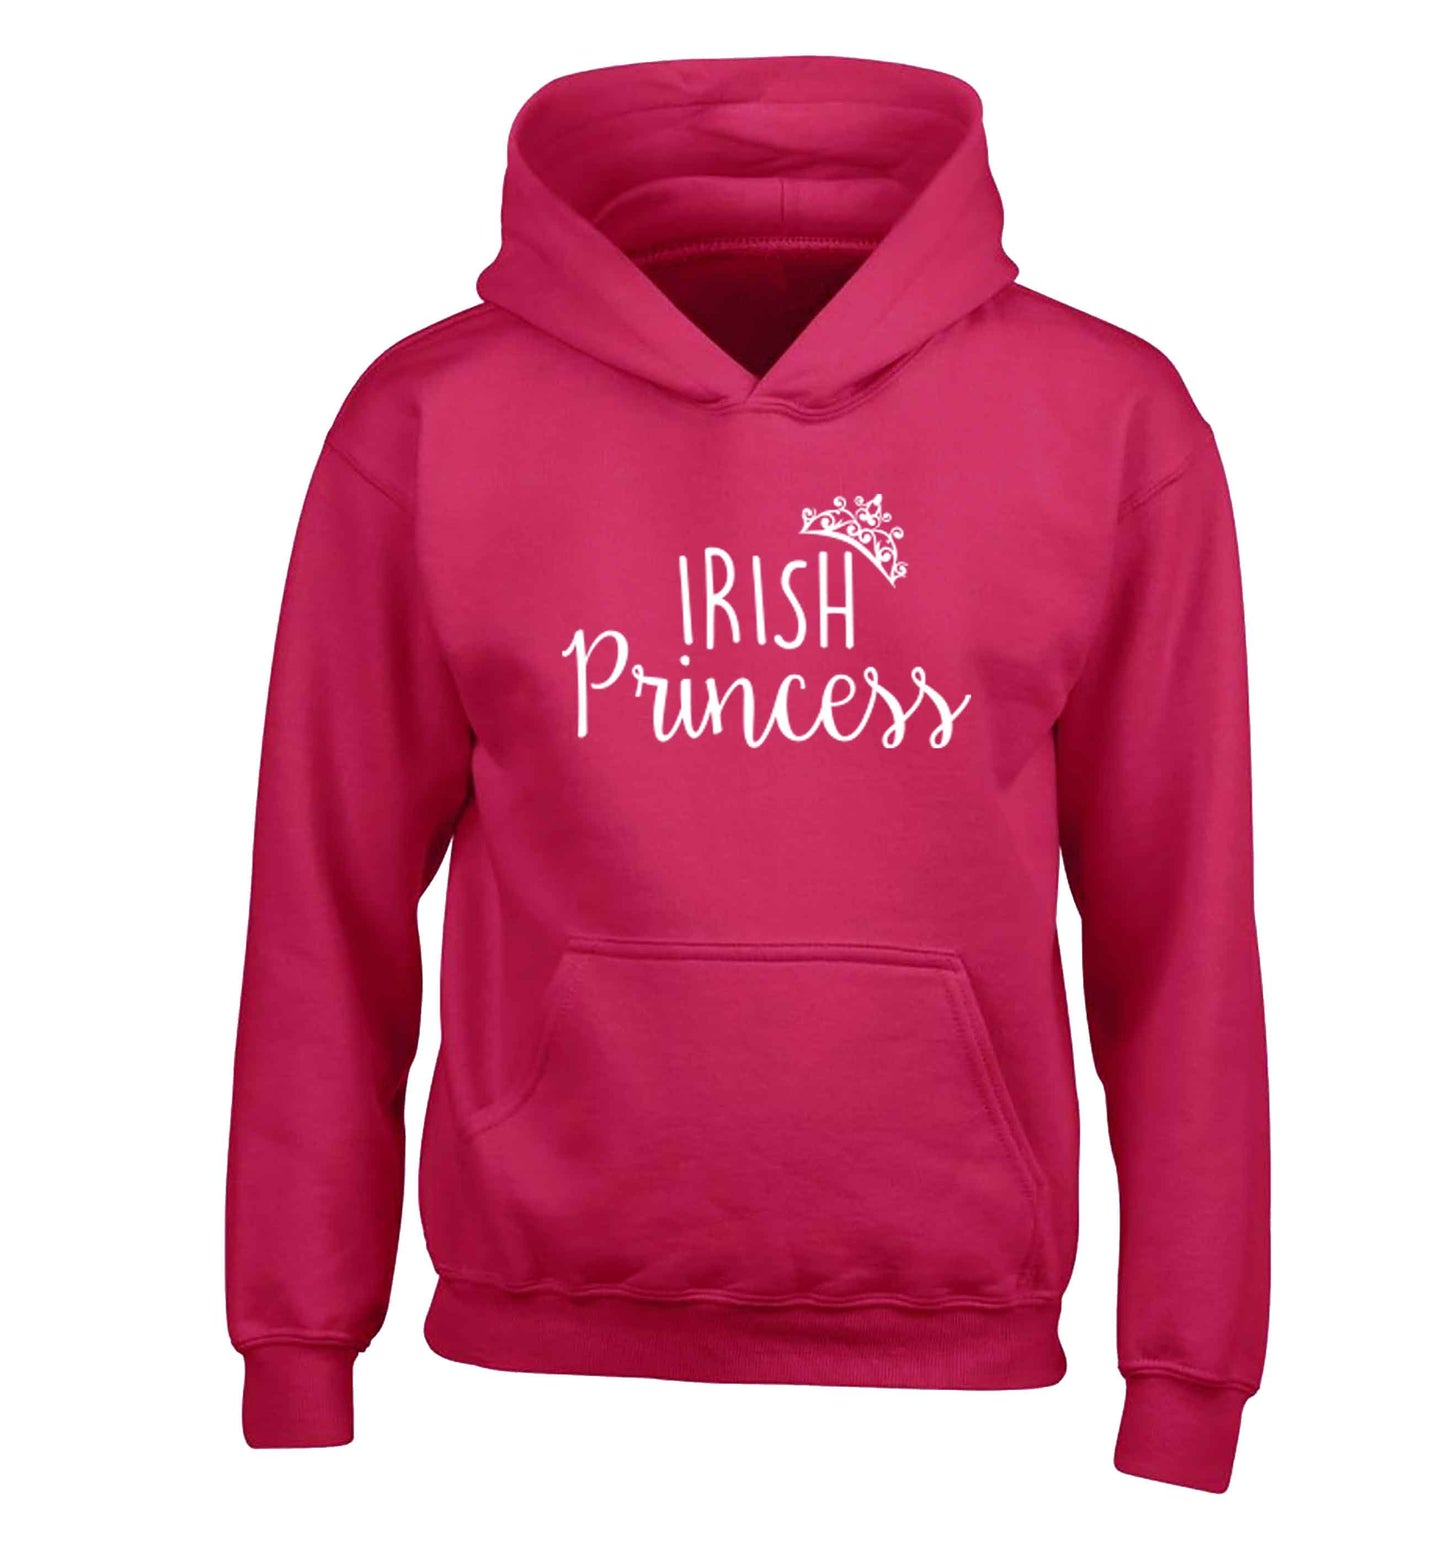 Irish princess children's pink hoodie 12-13 Years